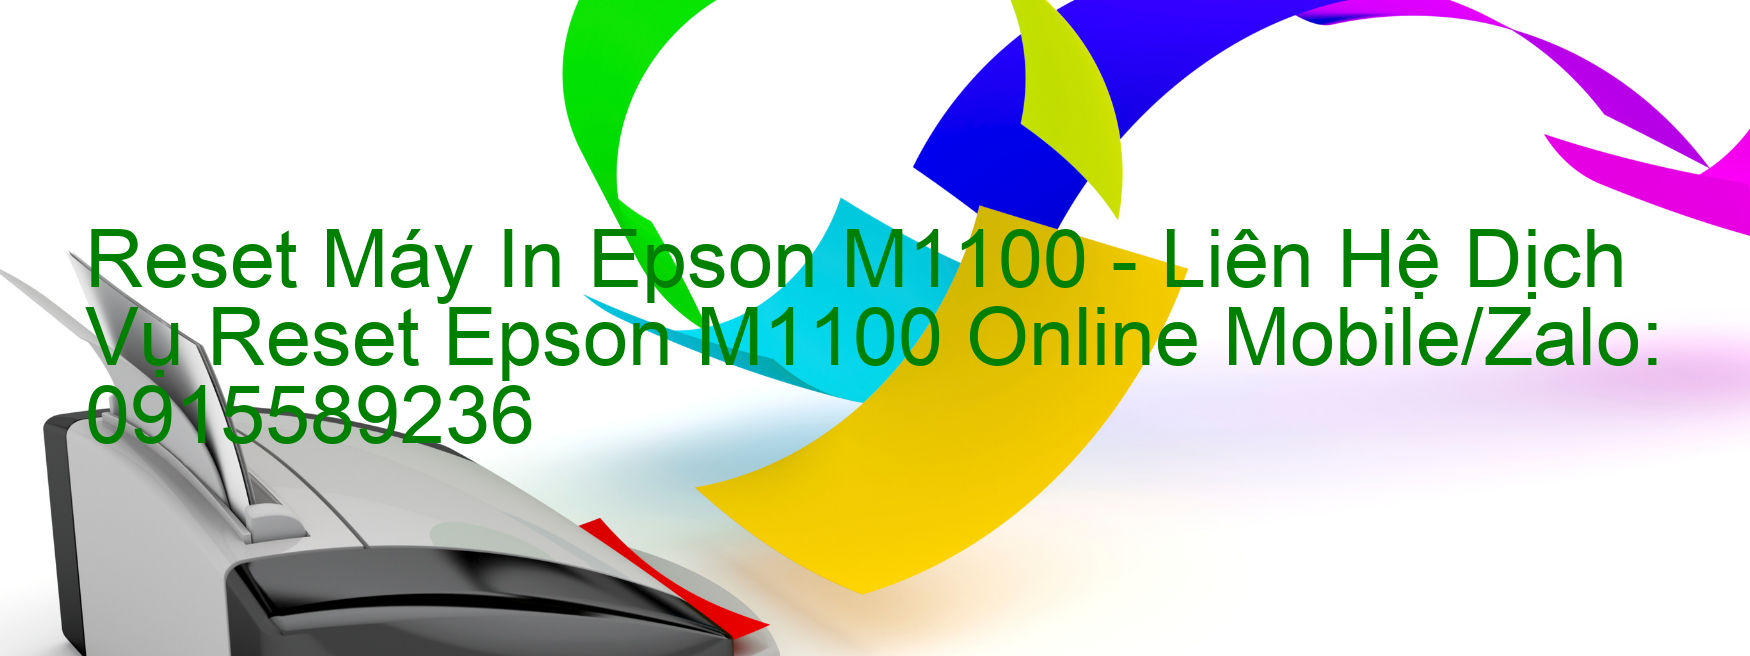 Reset Máy In Epson M1100 Online